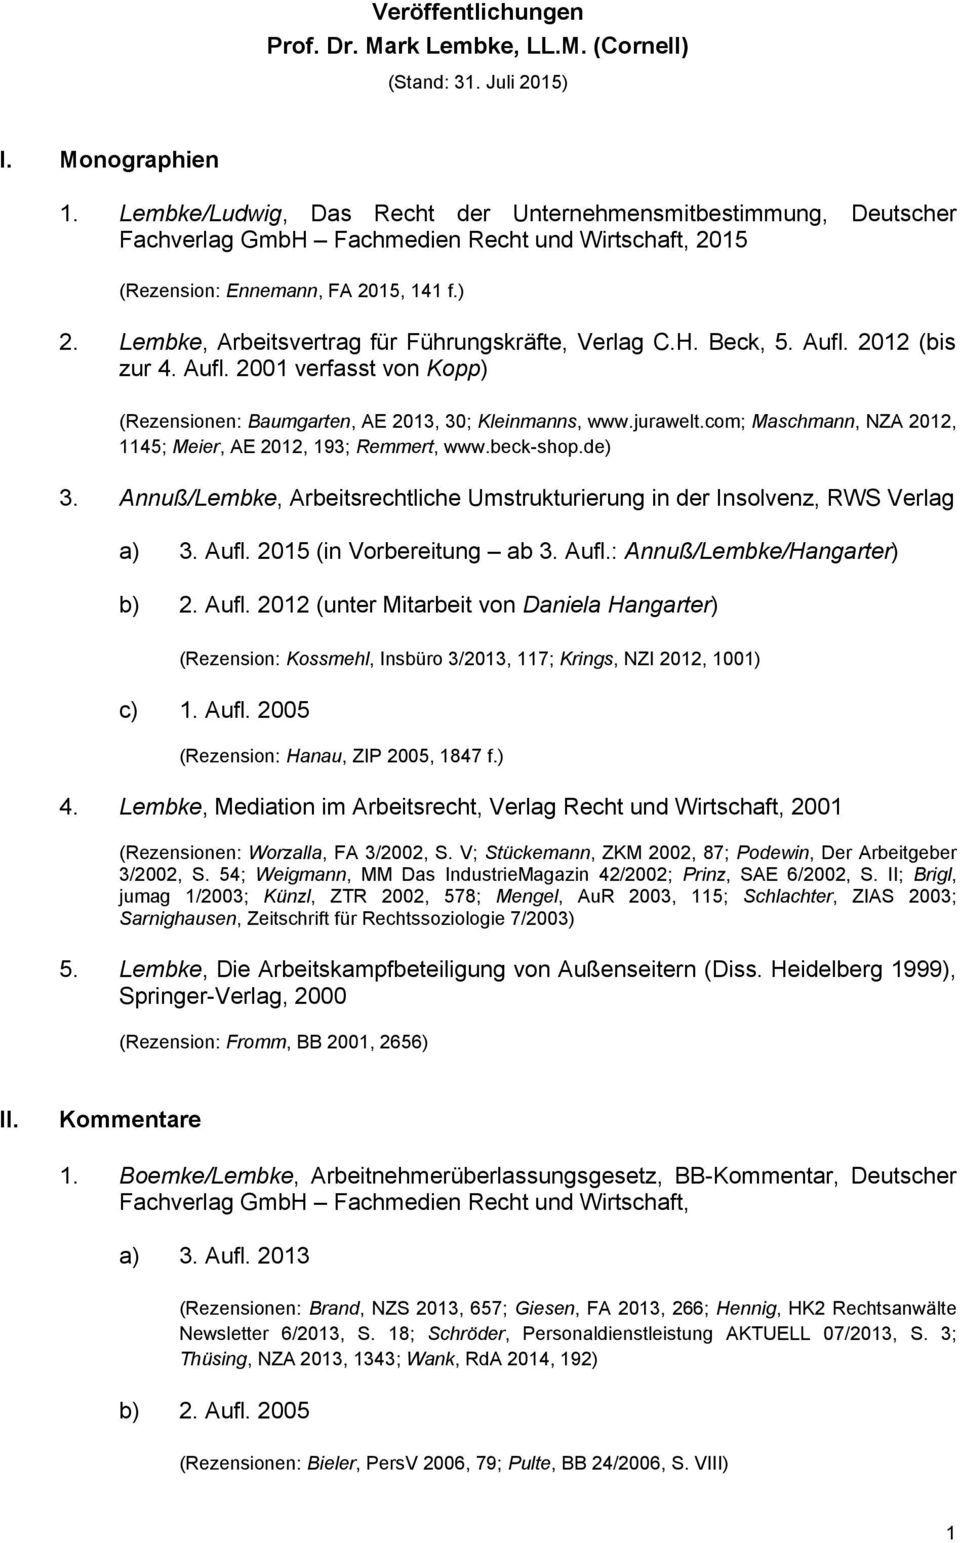 Lembke, Arbeitsvertrag für Führungskräfte, Verlag C.H. Beck, 5. Aufl. 2012 (bis zur 4. Aufl. 2001 verfasst von Kopp) (Rezensionen: Baumgarten, AE 2013, 30; Kleinmanns, www.jurawelt.